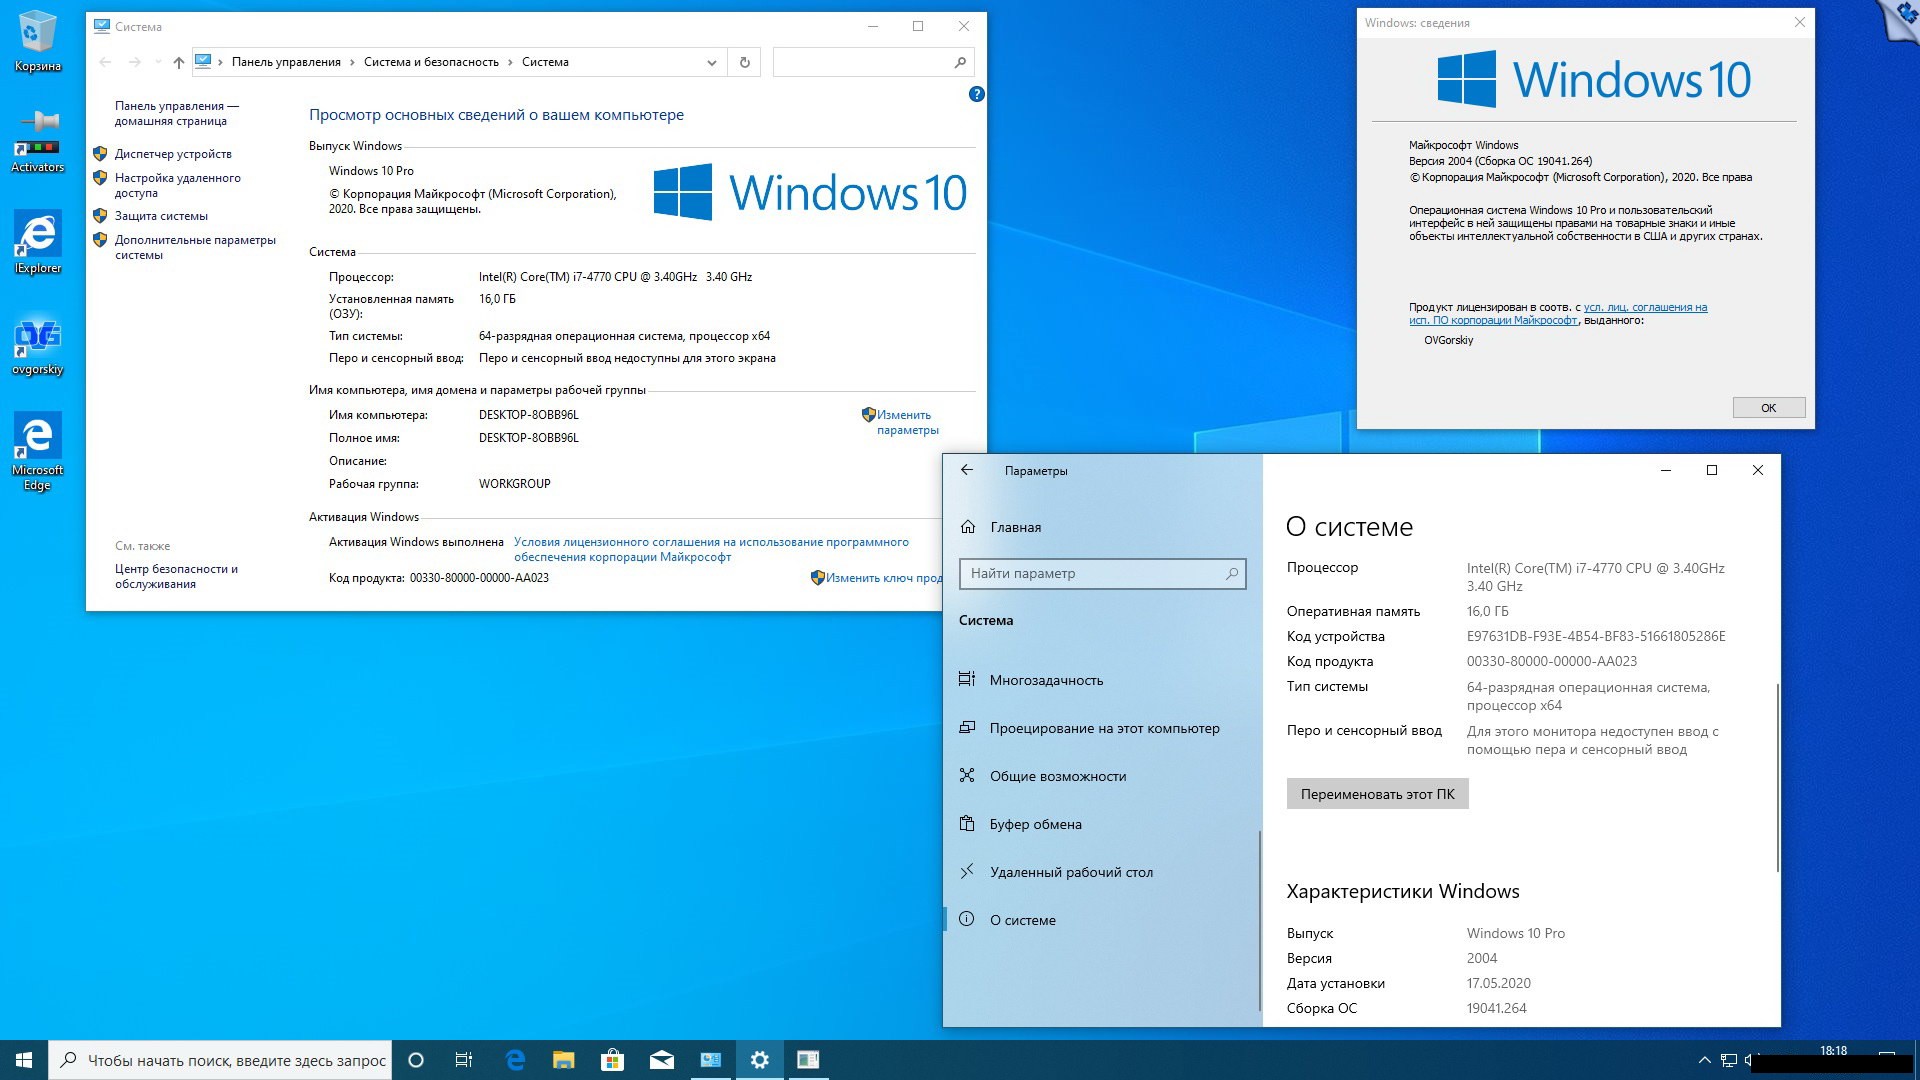 Виндовс 10 2004. Виндовс 8.1 embedded industry Pro. Windows 10 professional VL x86-x64 20h2 ru by OVGORSKIY октябрь 2020. Чся виндовсс 10.